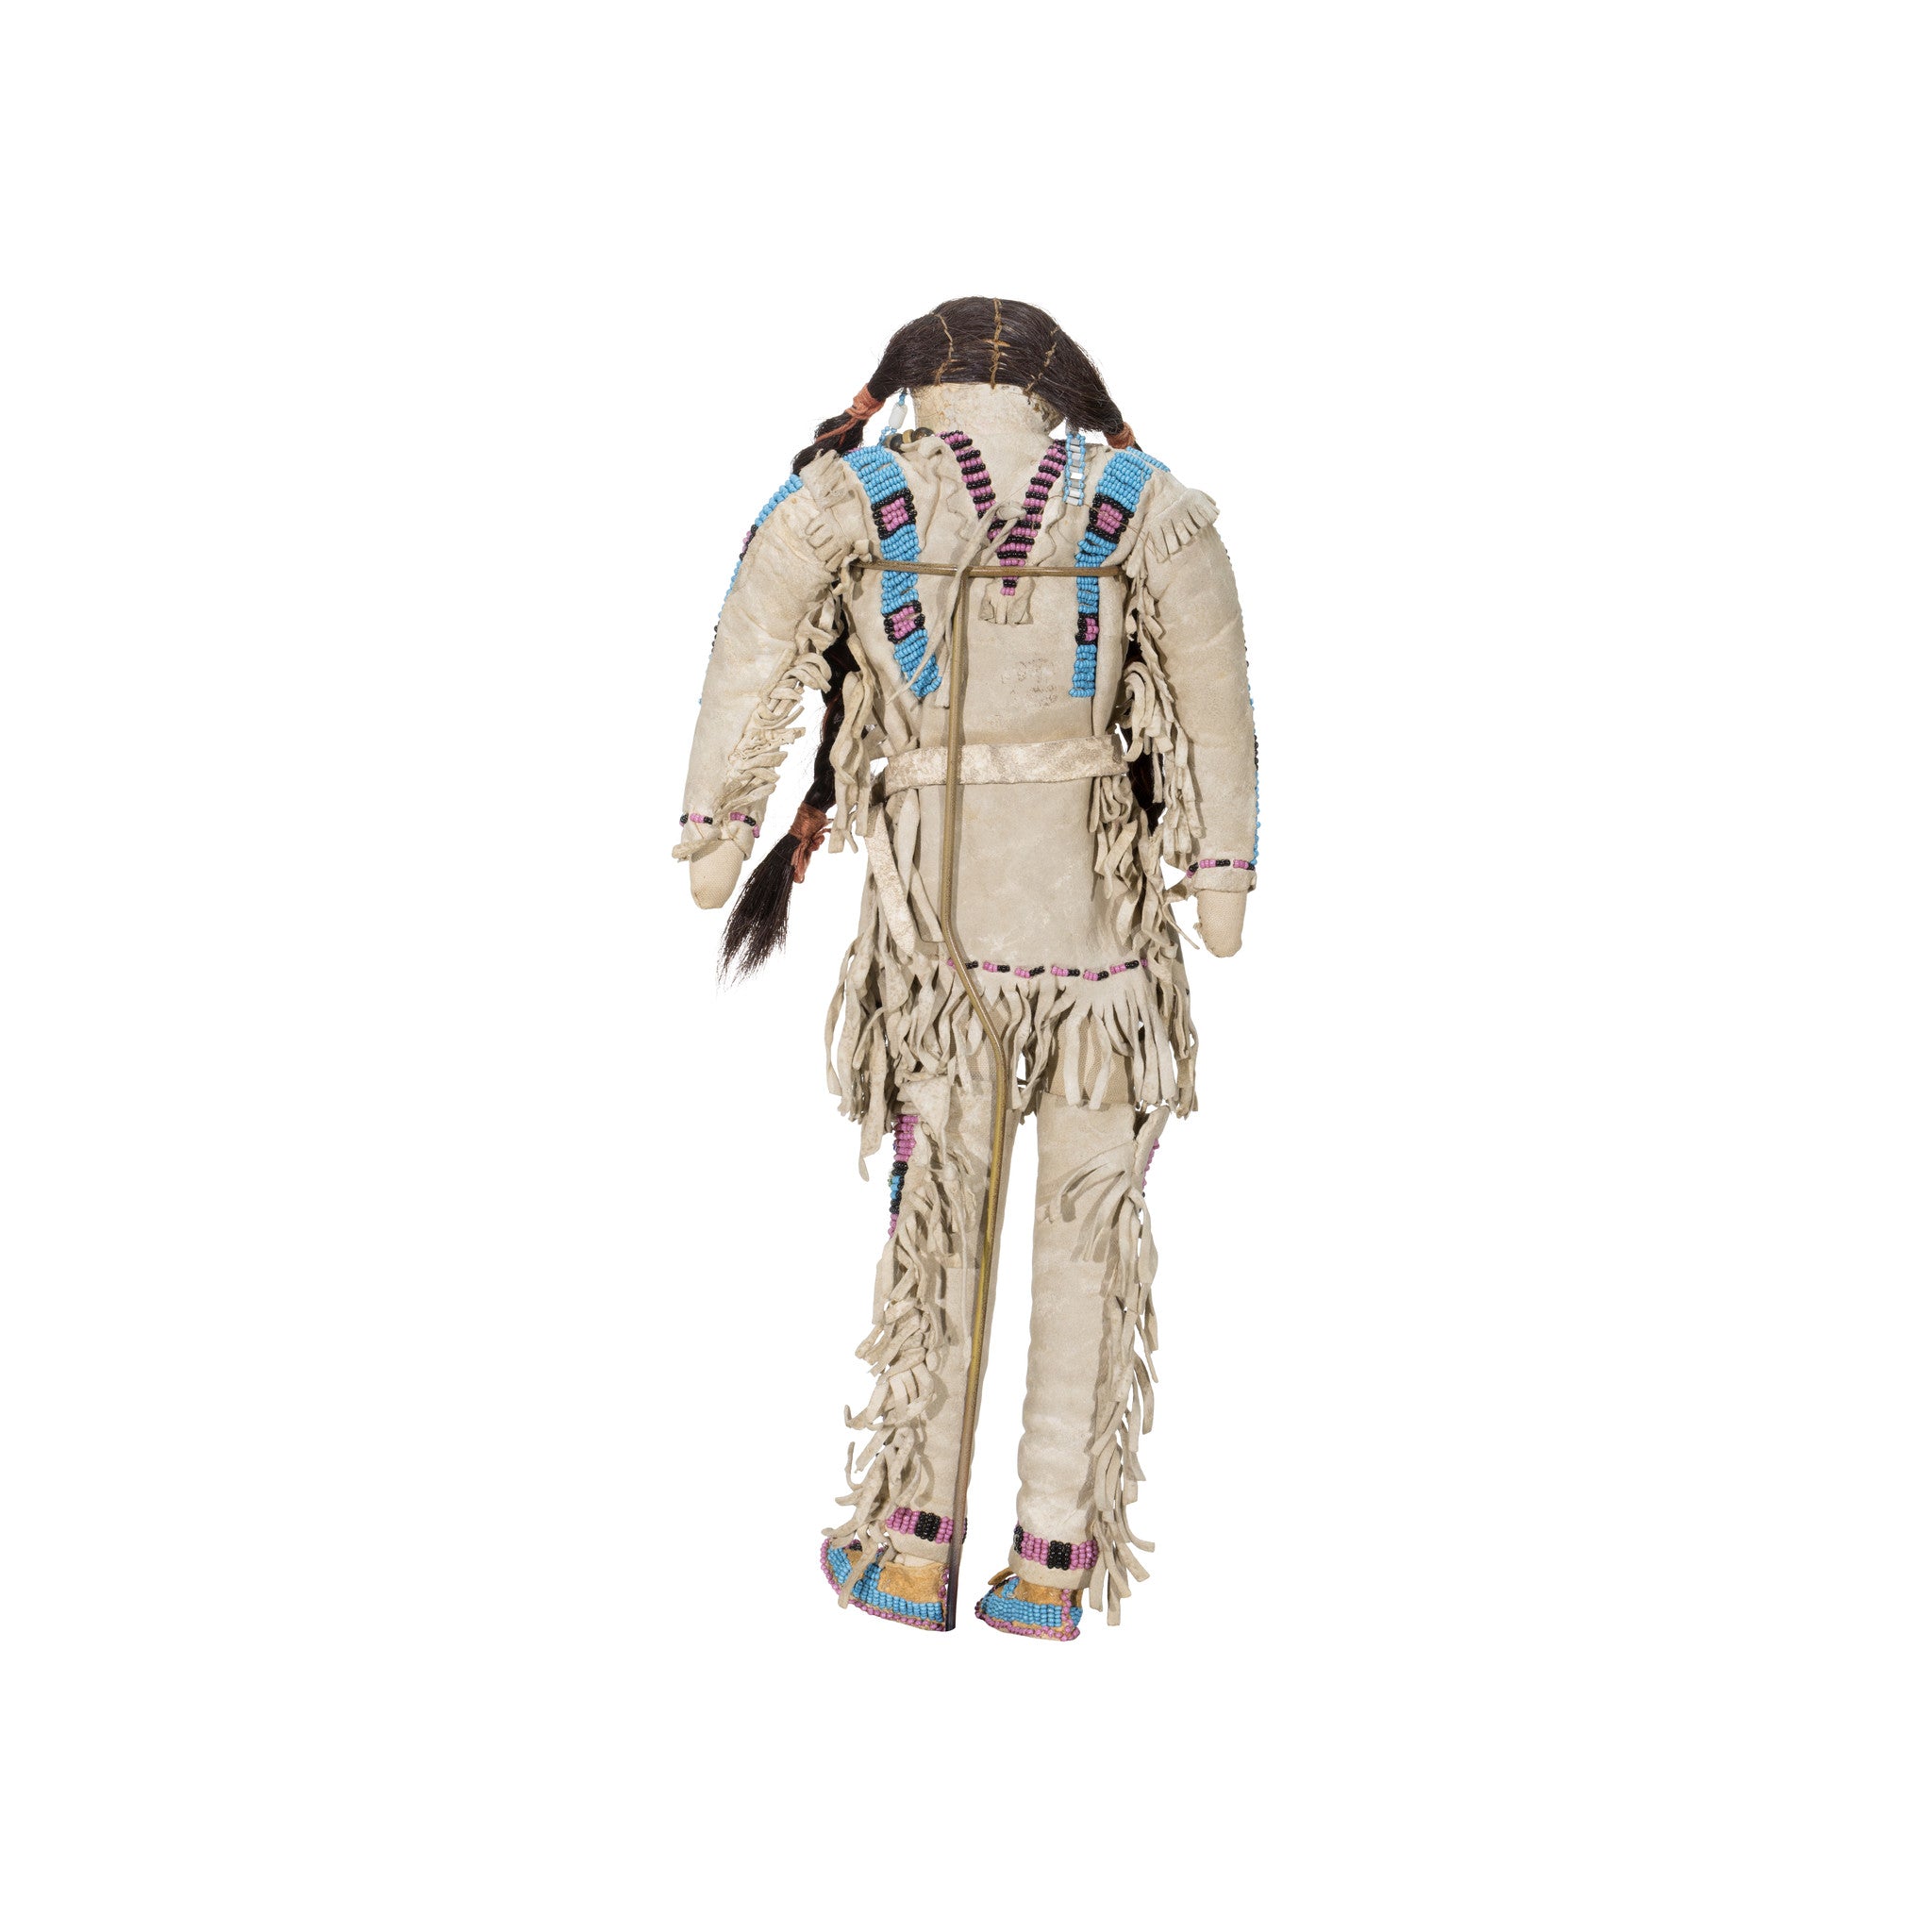 Dakota Sioux Beaded Hide Male Doll